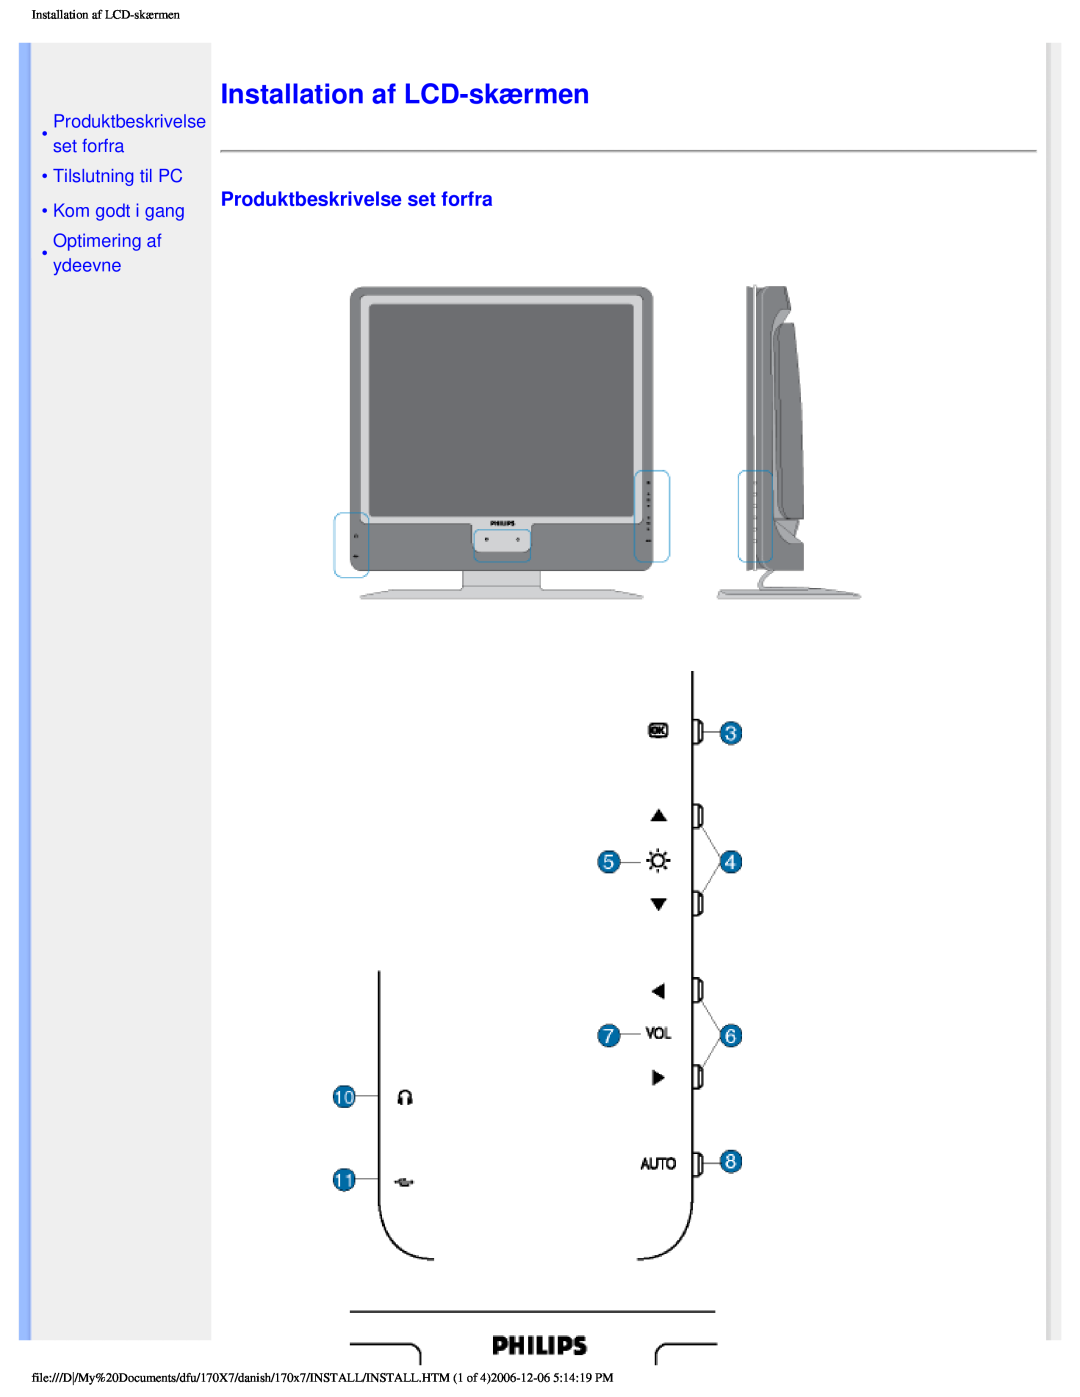 Philips 170x7 Installation af LCD-skærmen, Produktbeskrivelse set forfra Tilslutning til PC, Kom godt i gang, ydeevne 